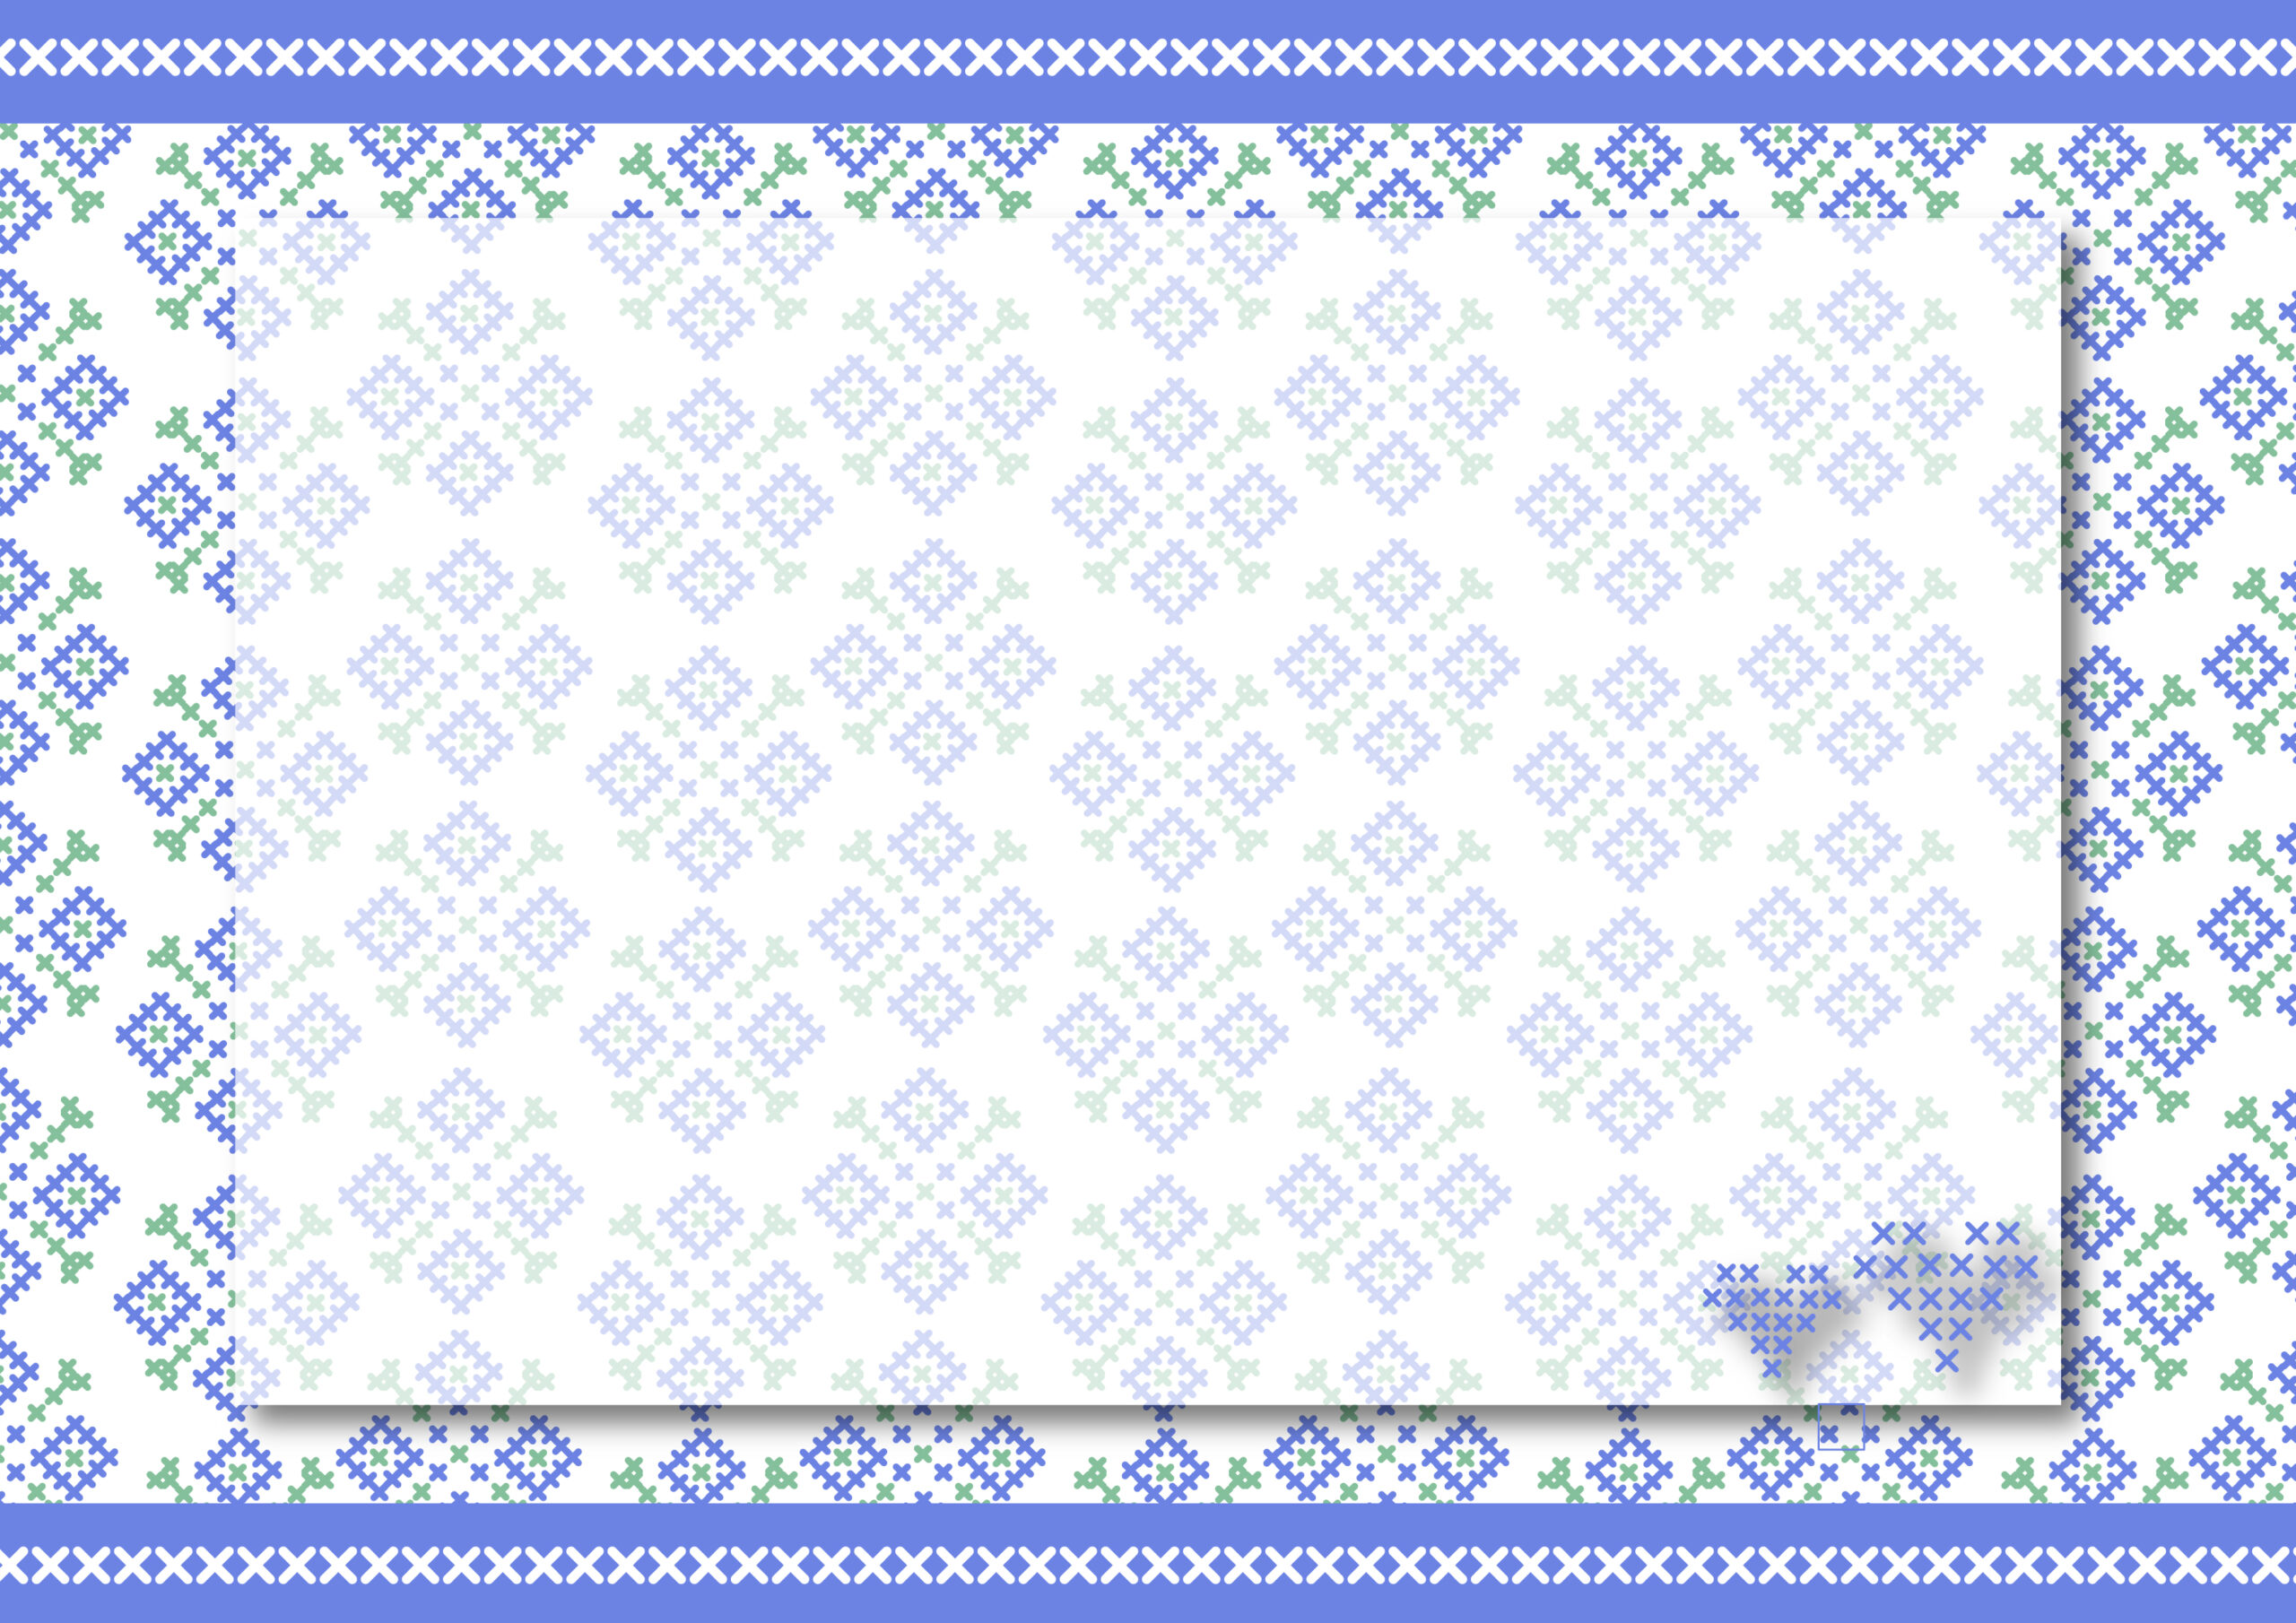 爽やかなブルーカラーのおしゃれなフレームで、編み物教室の張り紙などにおすすめのデザインとなっております。